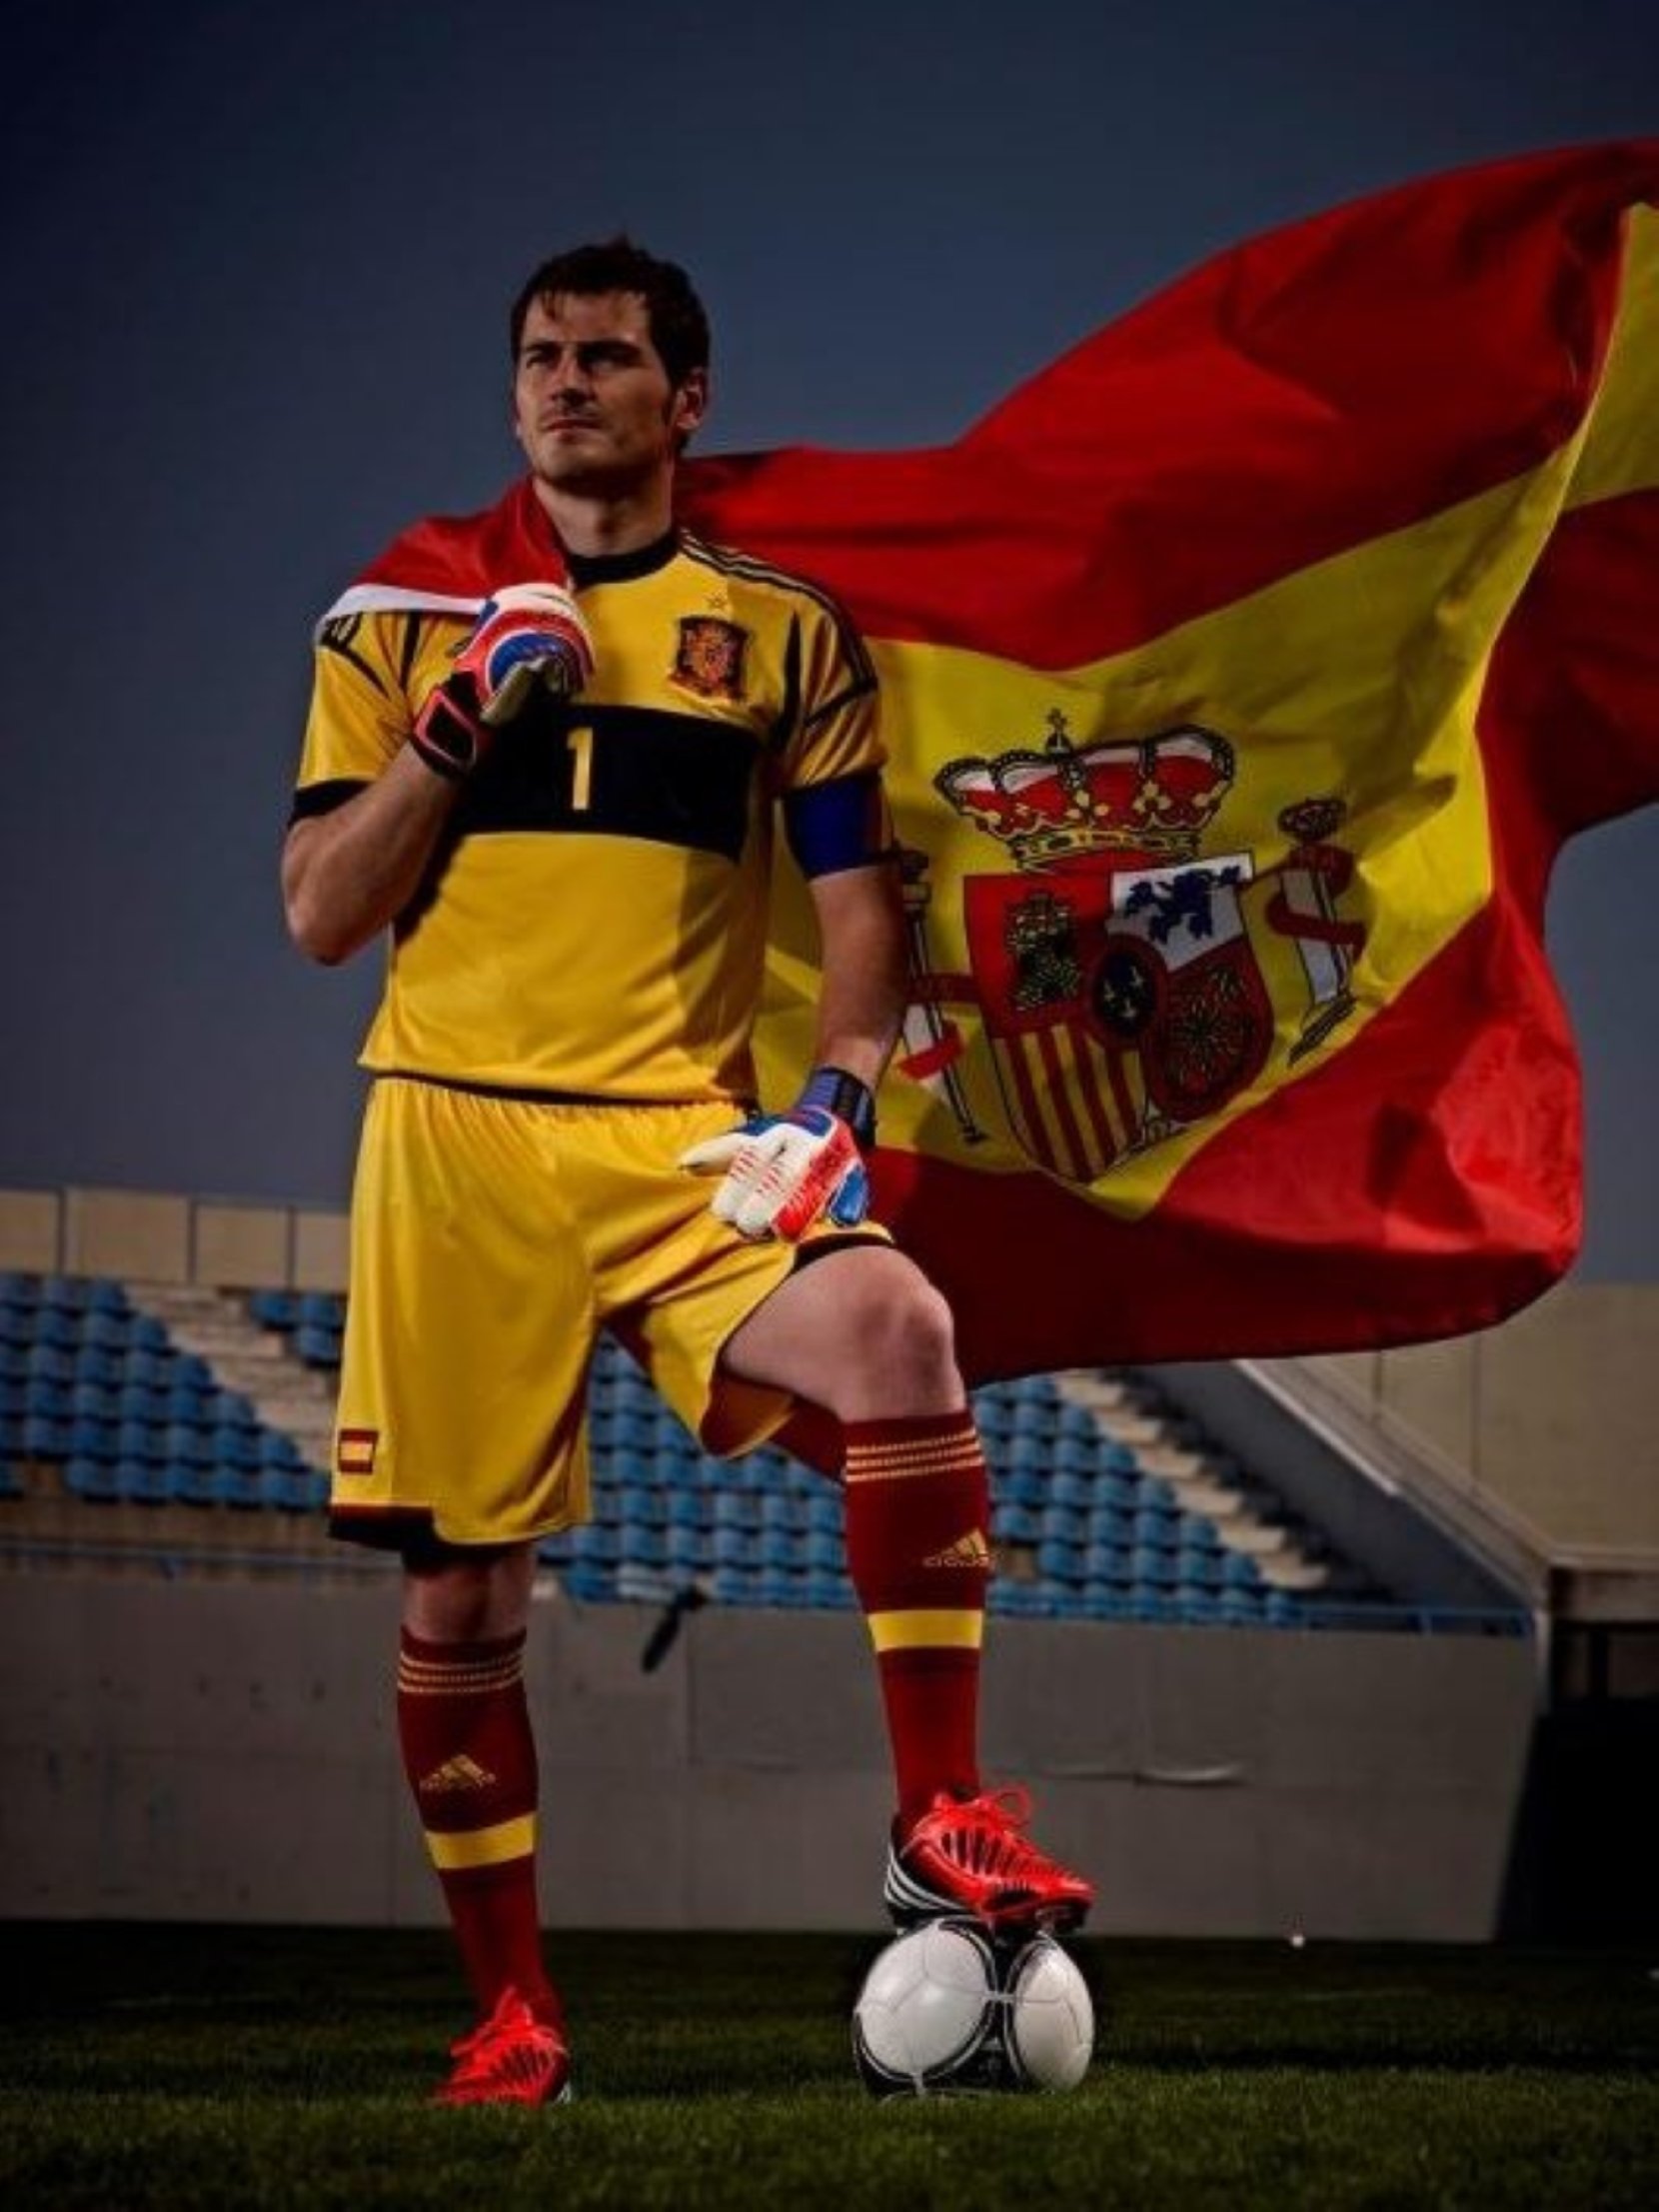 Casillas pide calma... y se lo comen por escribir 'Catalunya': "con eñe melón"